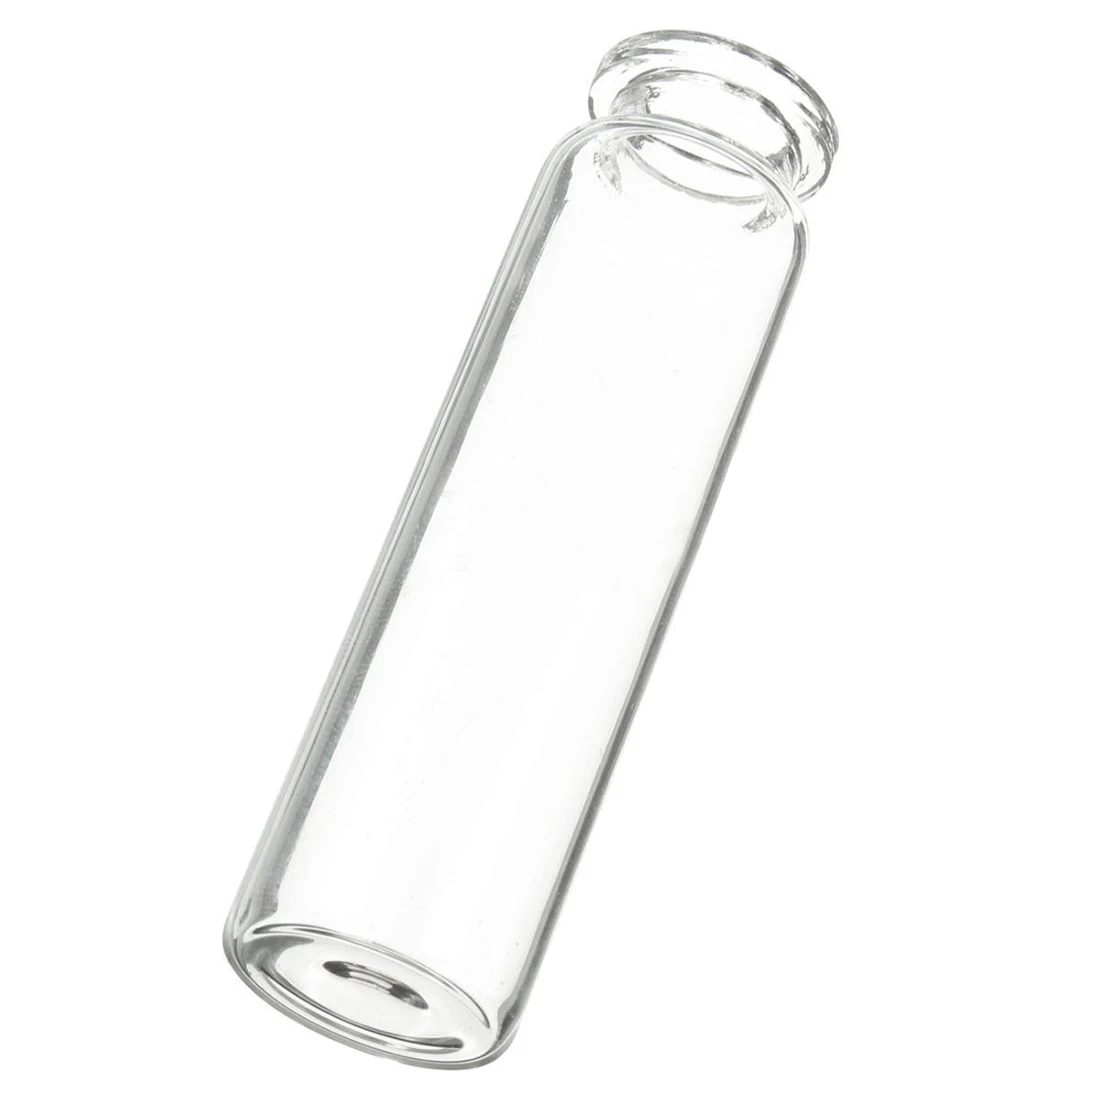 Горячая распродажа 10 шт 20 мл мини прозрачная бутылка для желаний сообщение стеклянный флакон с пробкой домашний декор